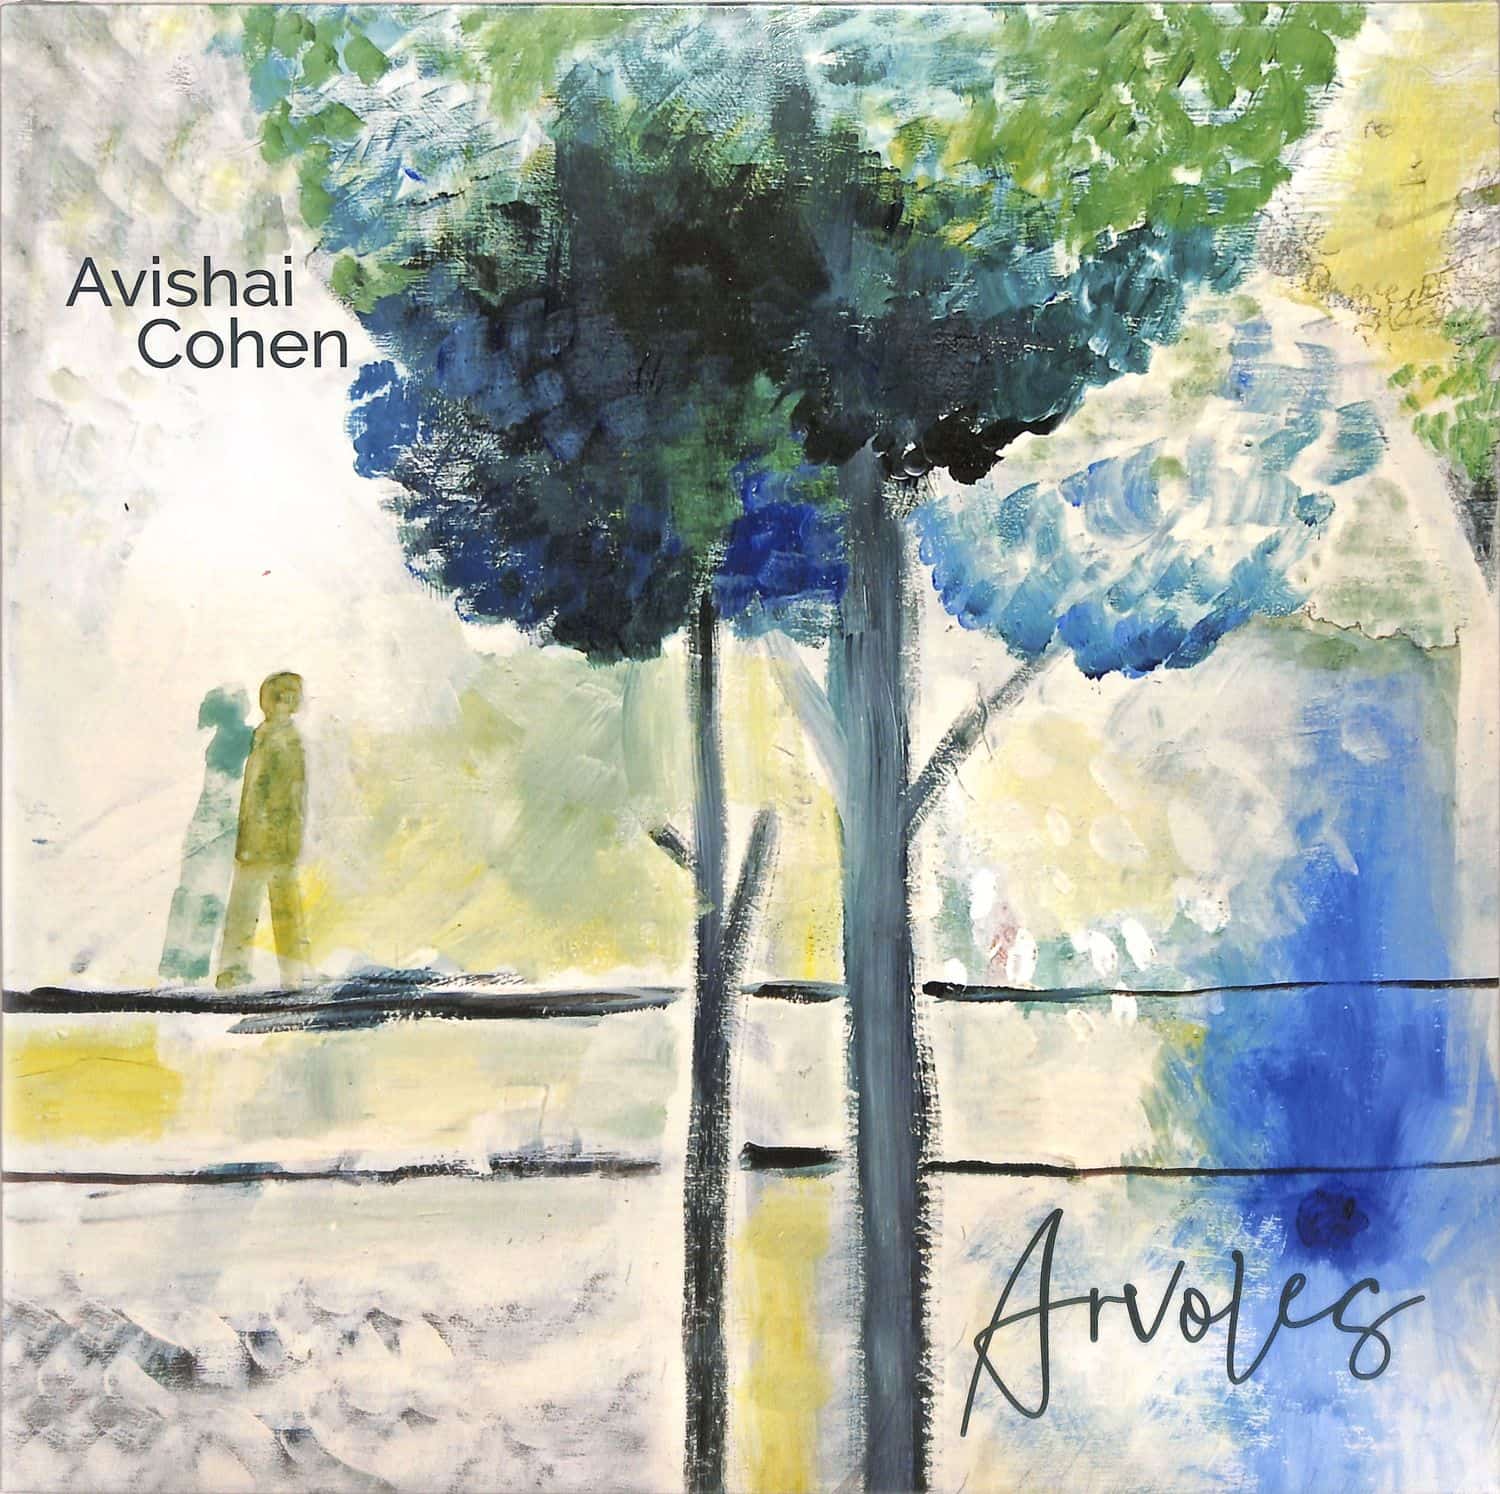 Avishai Cohen - ARVOLES 